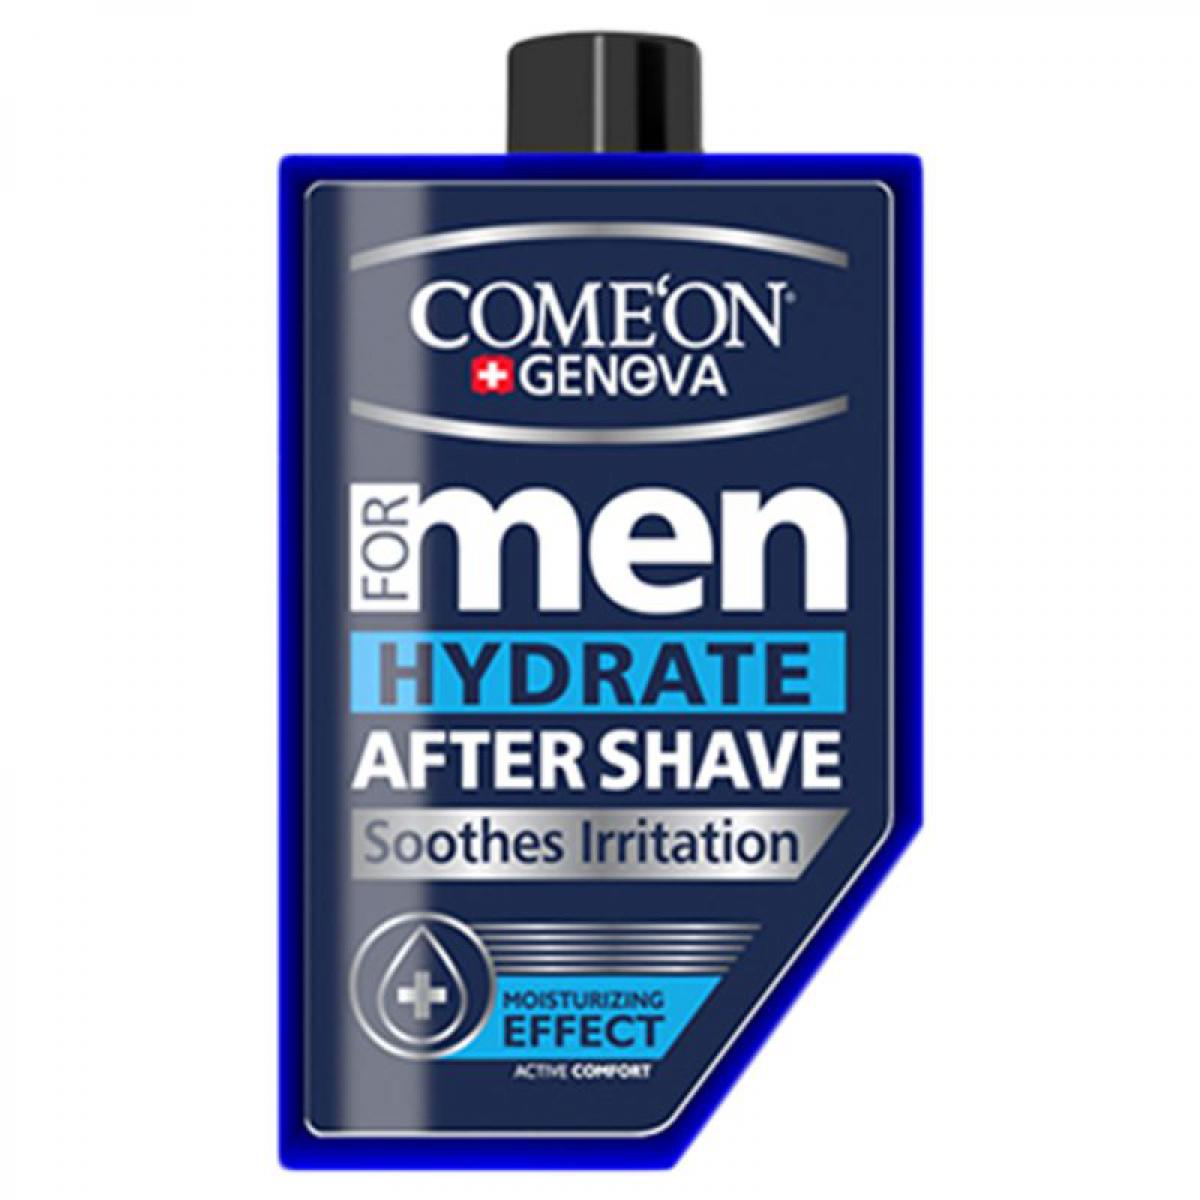 ژل افتر شیو آبرسان با خاصیت رطوبت رسانی و نرم کننده پوست - Comeon Men Hydrate After Shave 260ml